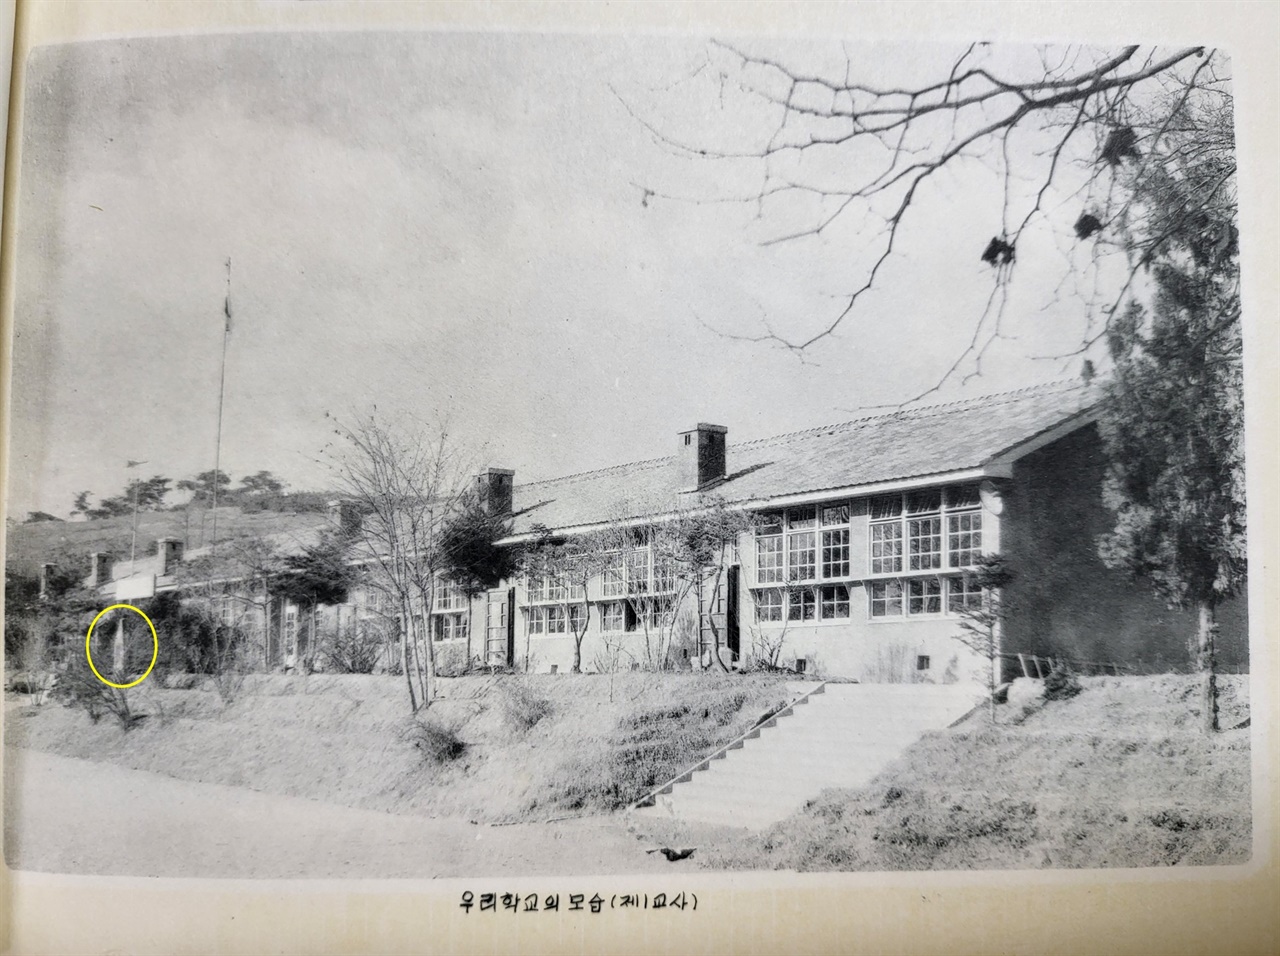 1962년(제31회) 졸업앨범 사진에서 해방기념비(노란색 원)를 찾을 수 있다. 당시 해방기념비는 1교사 앞에 그대로 있었다. 유성초등학교는 1927년 유성공립보통학교로 개교한 이래, 1938년 유성동덕공립심상소학교로 개칭되었다가 1941년에 유성동덕공립국민학교로 개칭되었고, 1950년부터 유성국민학교로 변경되었다가 1996년부터 유성초등학교로 불리고 있다.